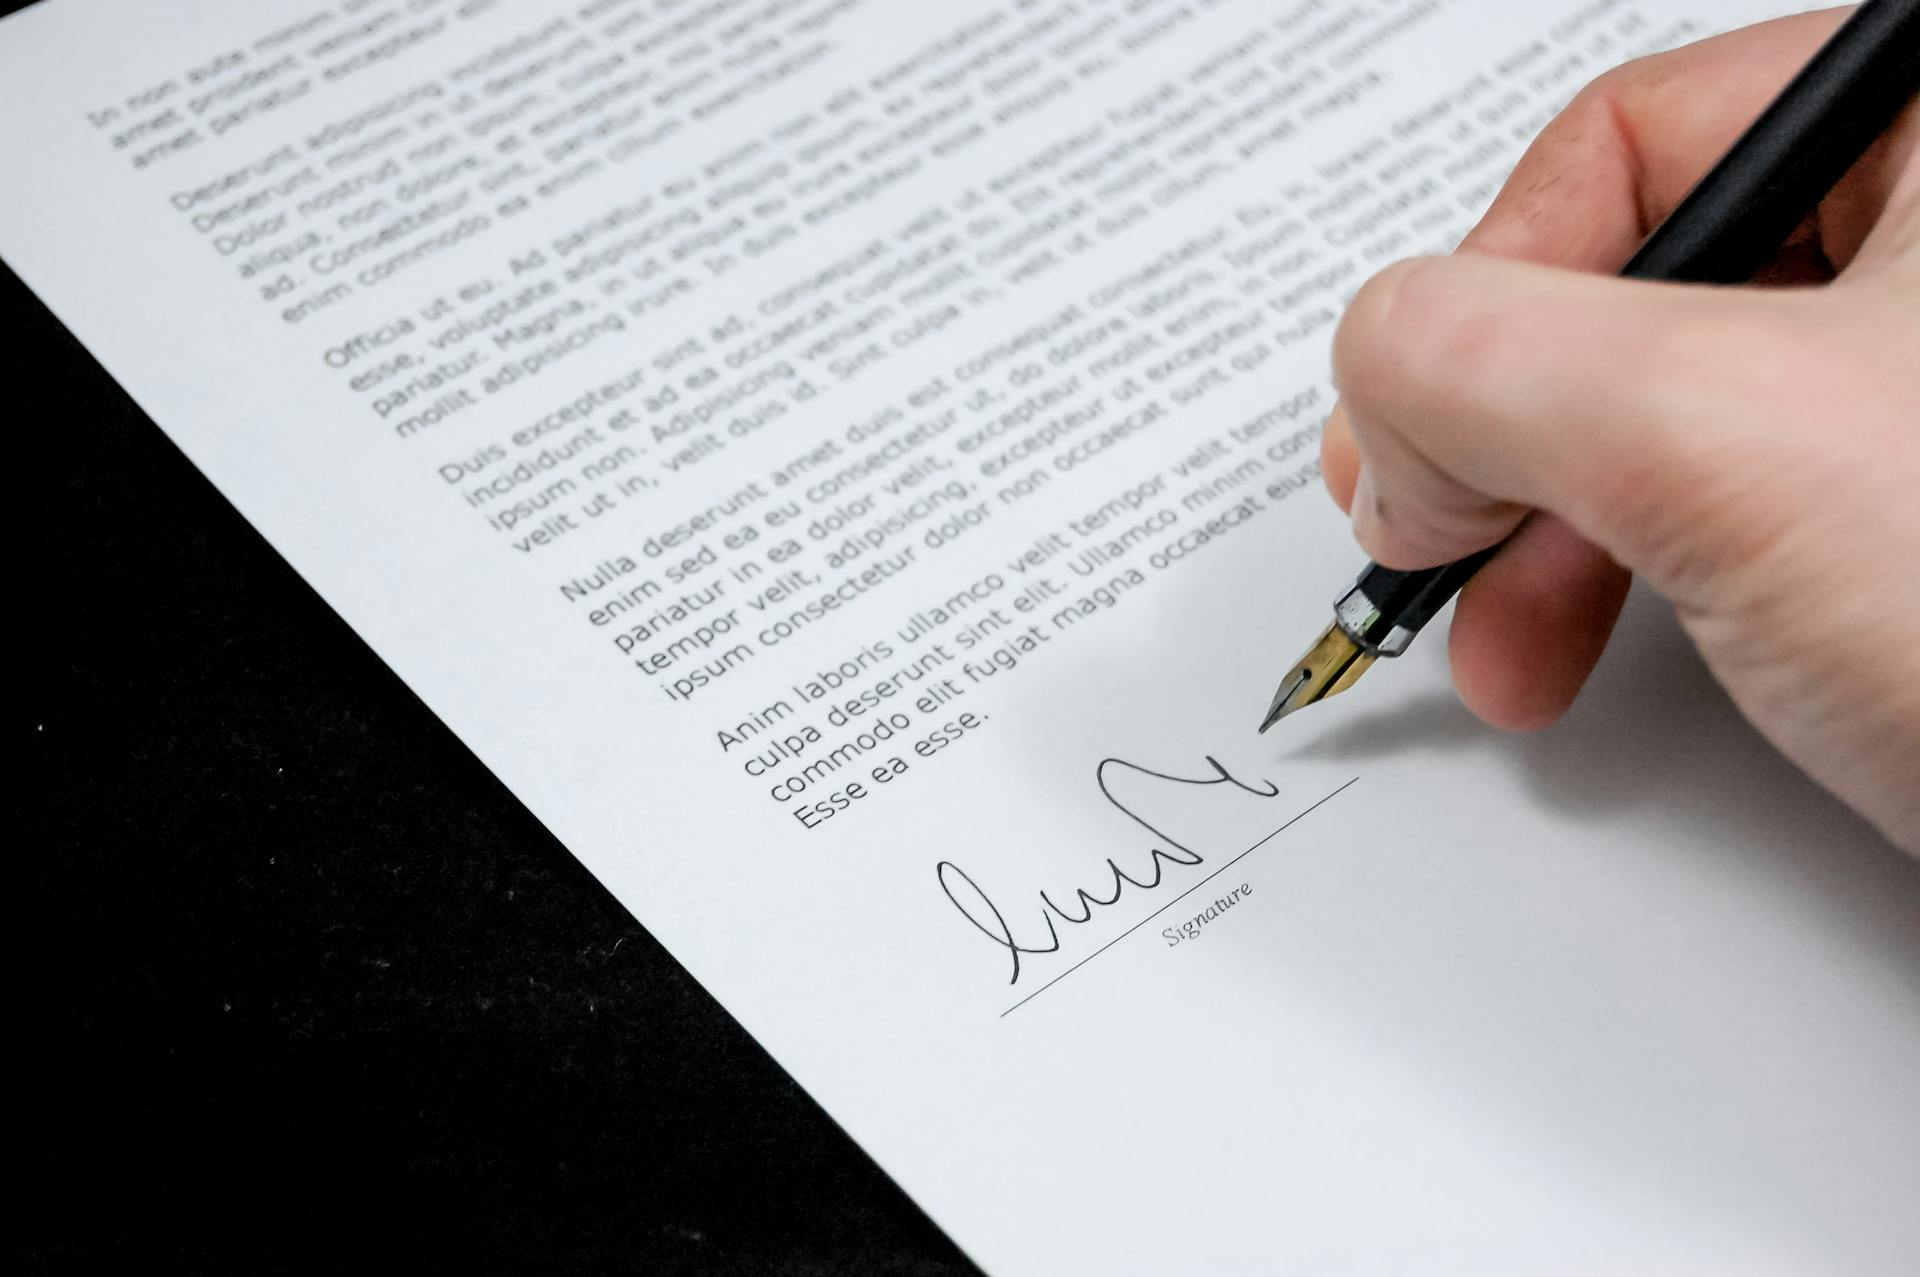 Une personne signant des documents administratifs | Source : Pexels